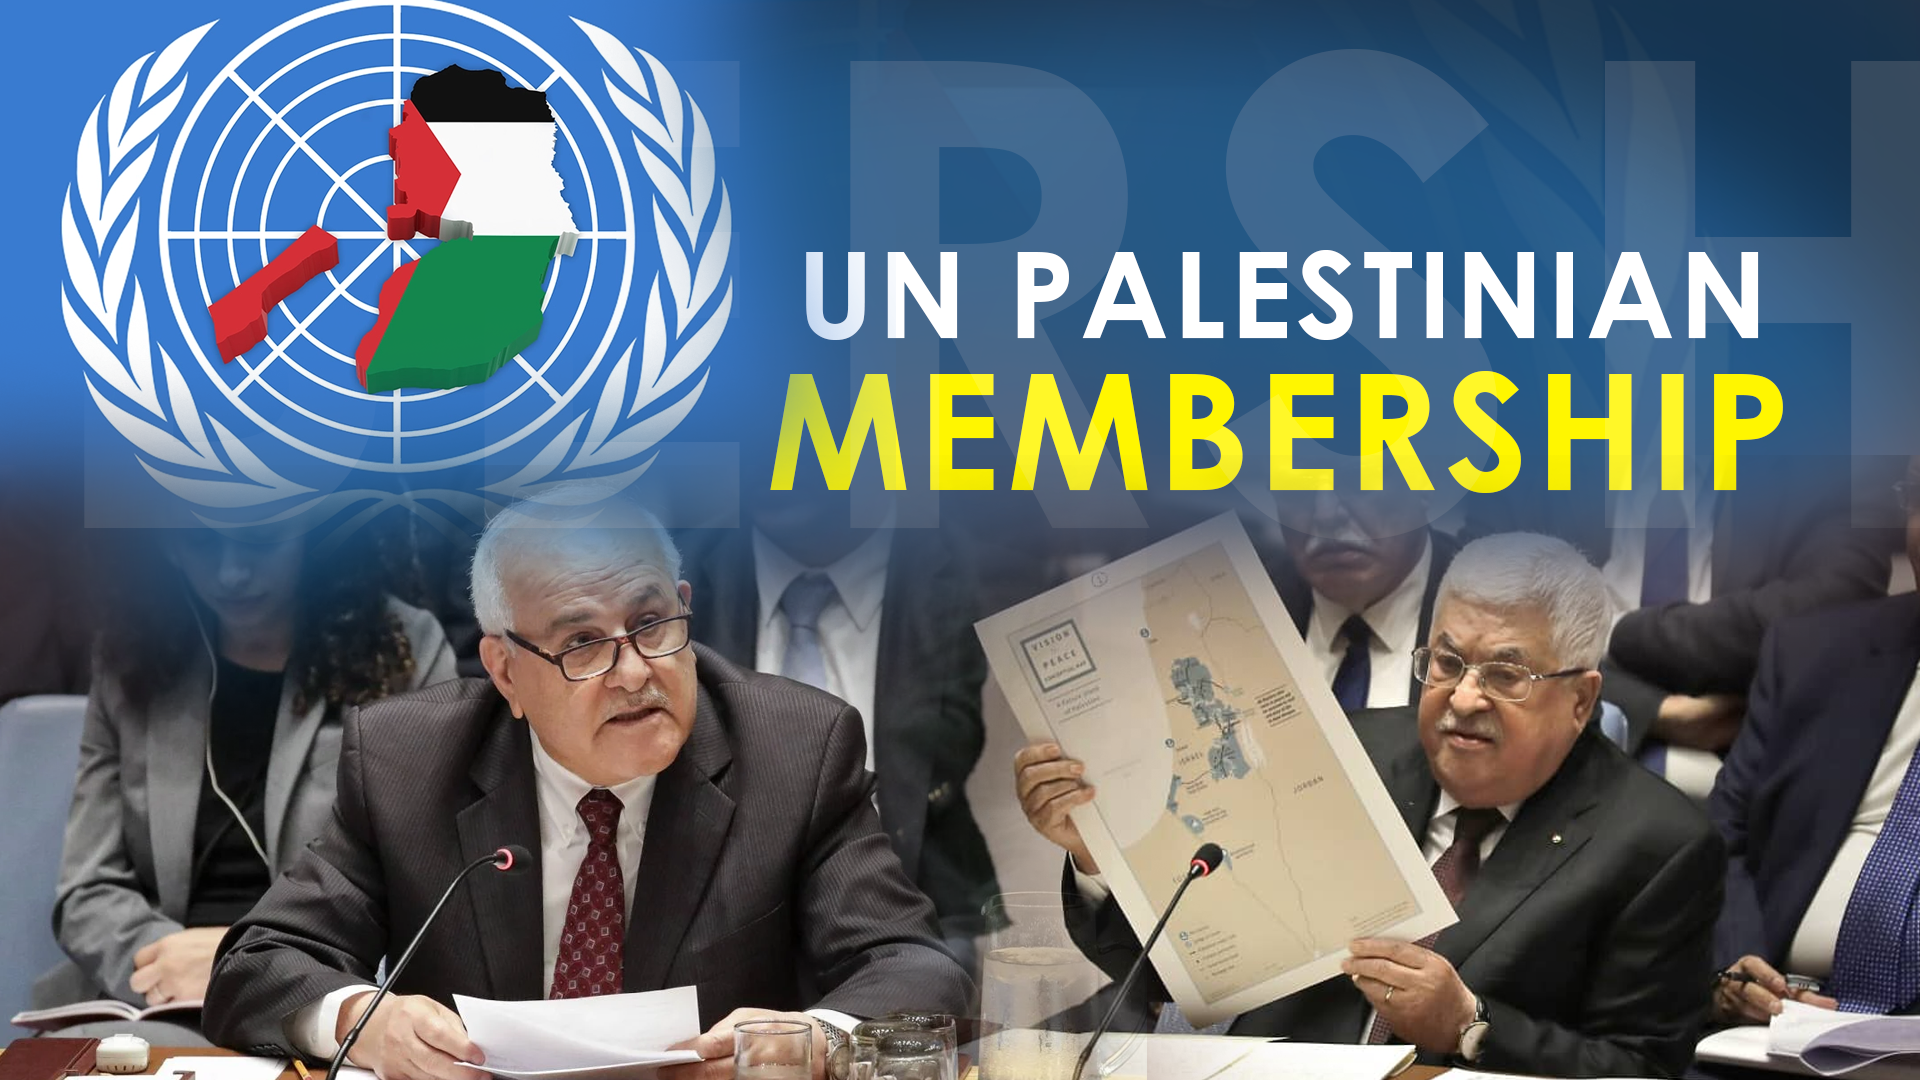 Palestine push for UN recognition